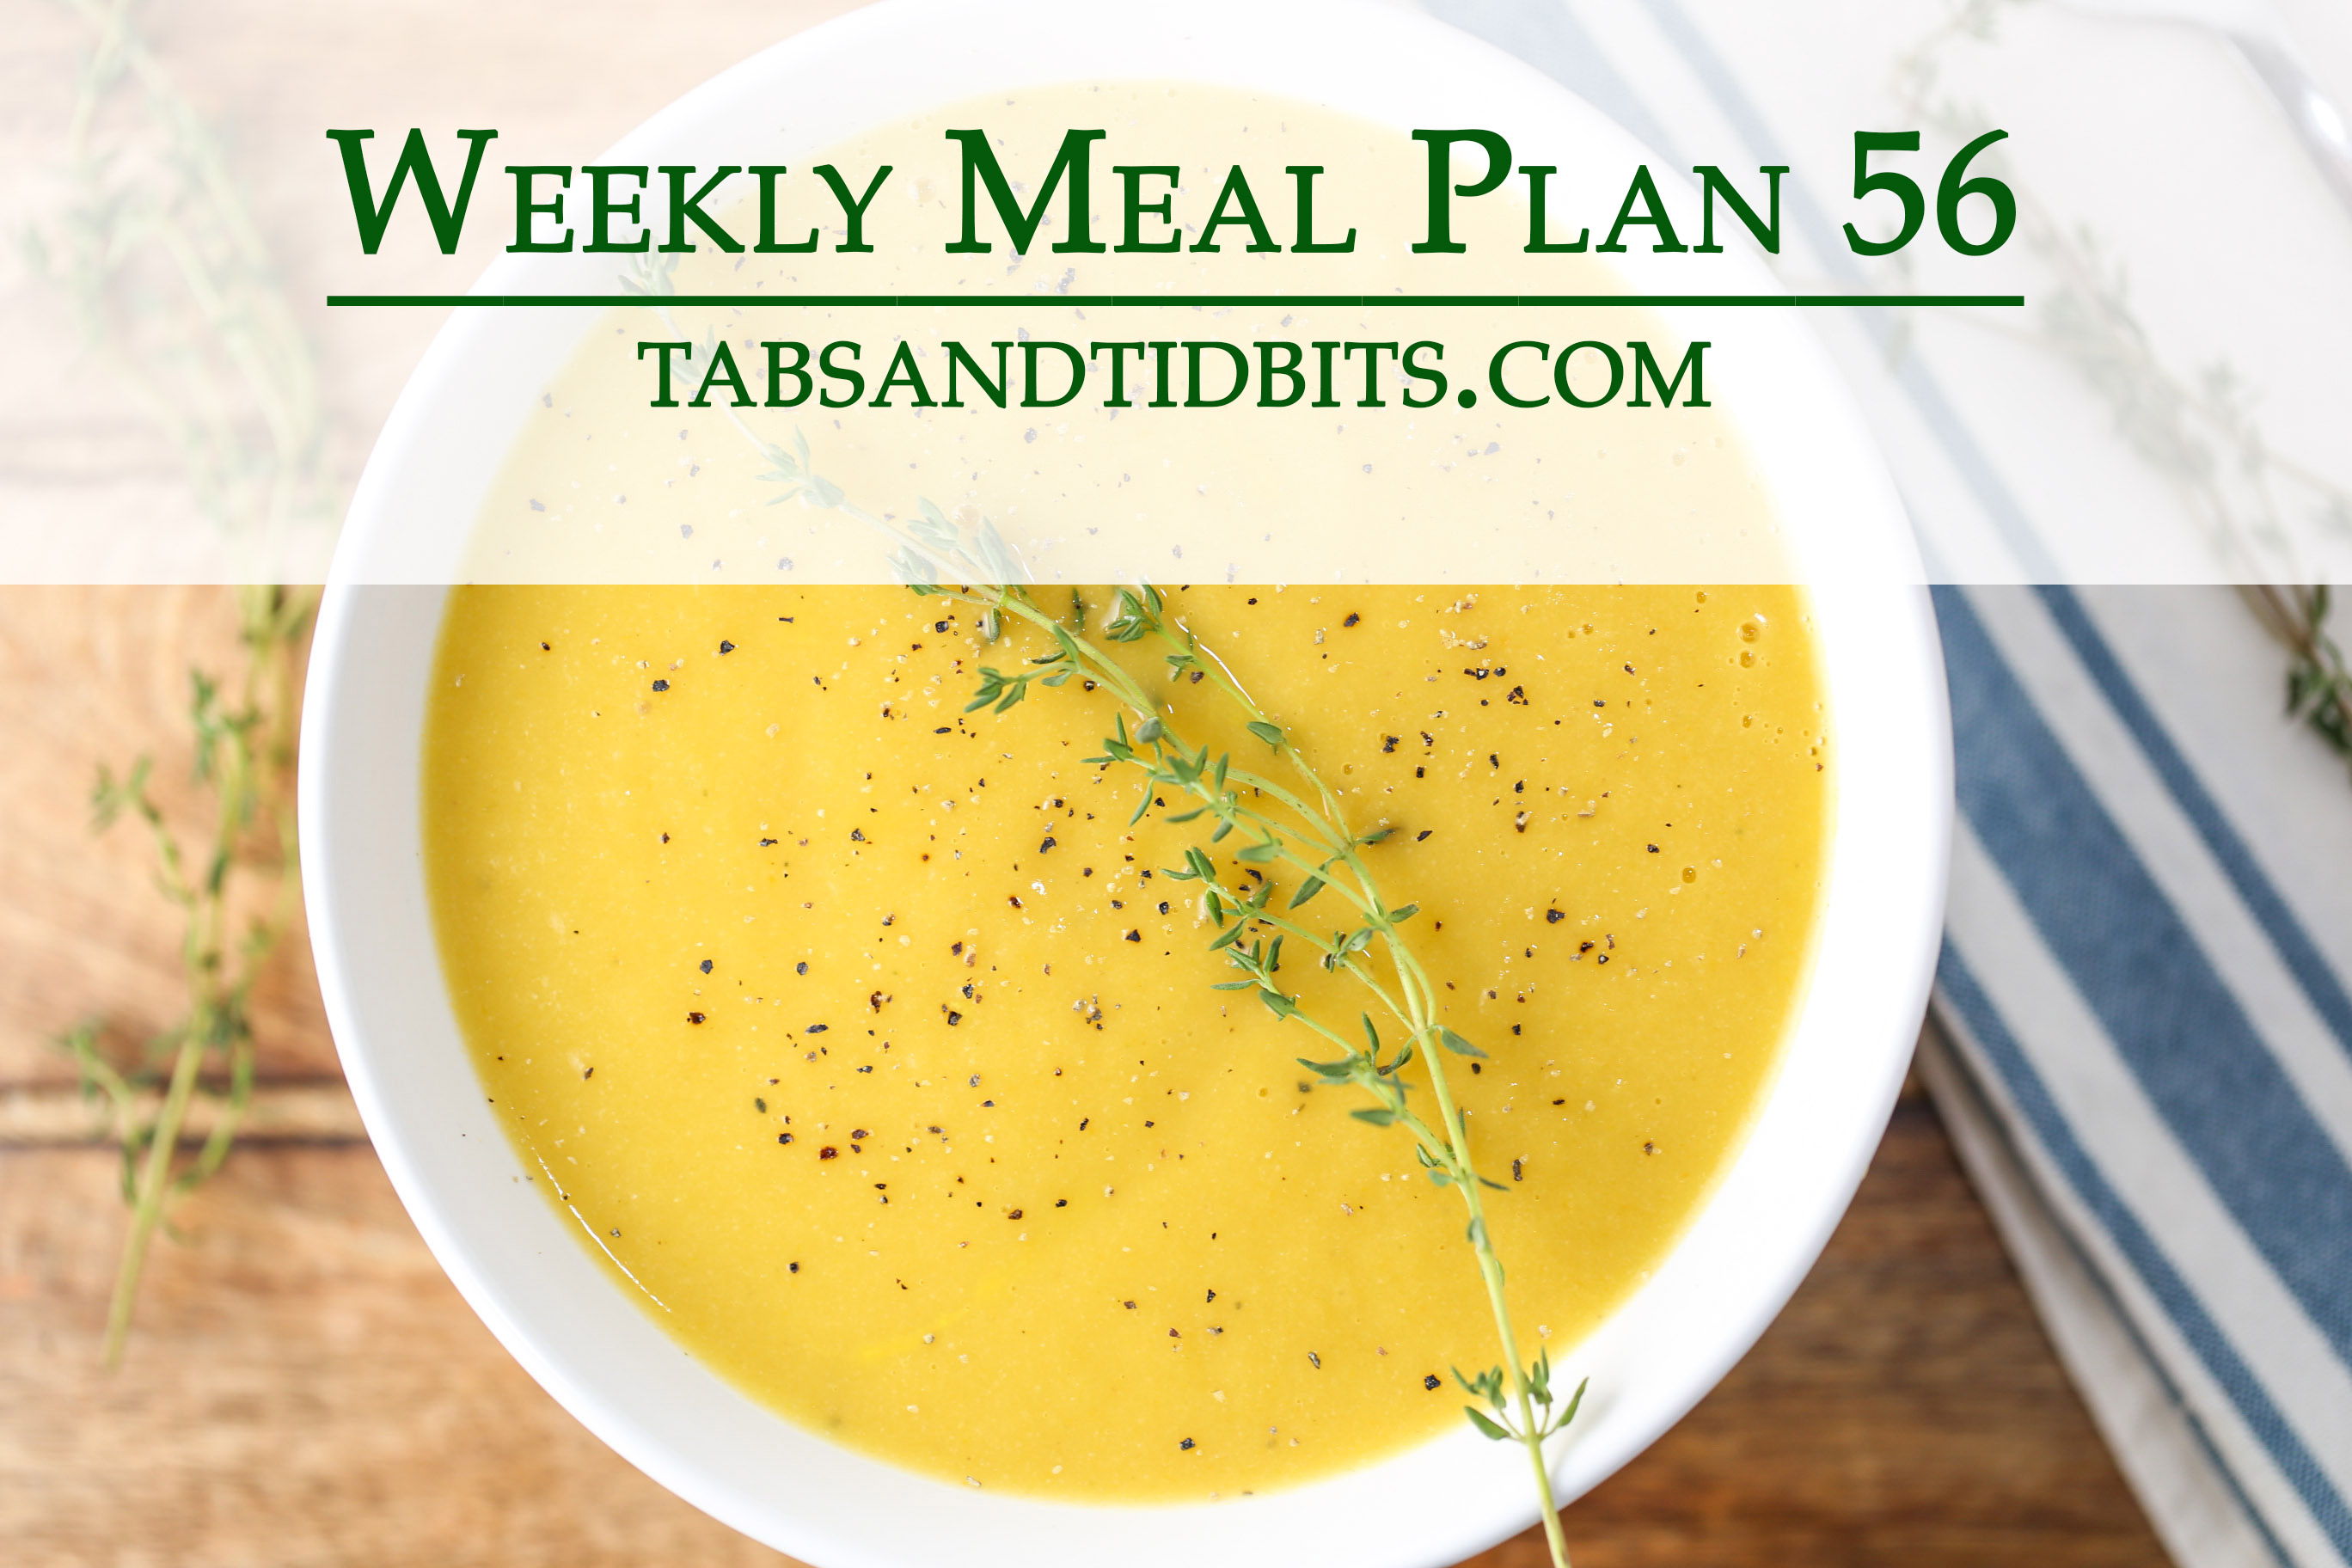 Vegetarian Weekly Meal Plan!